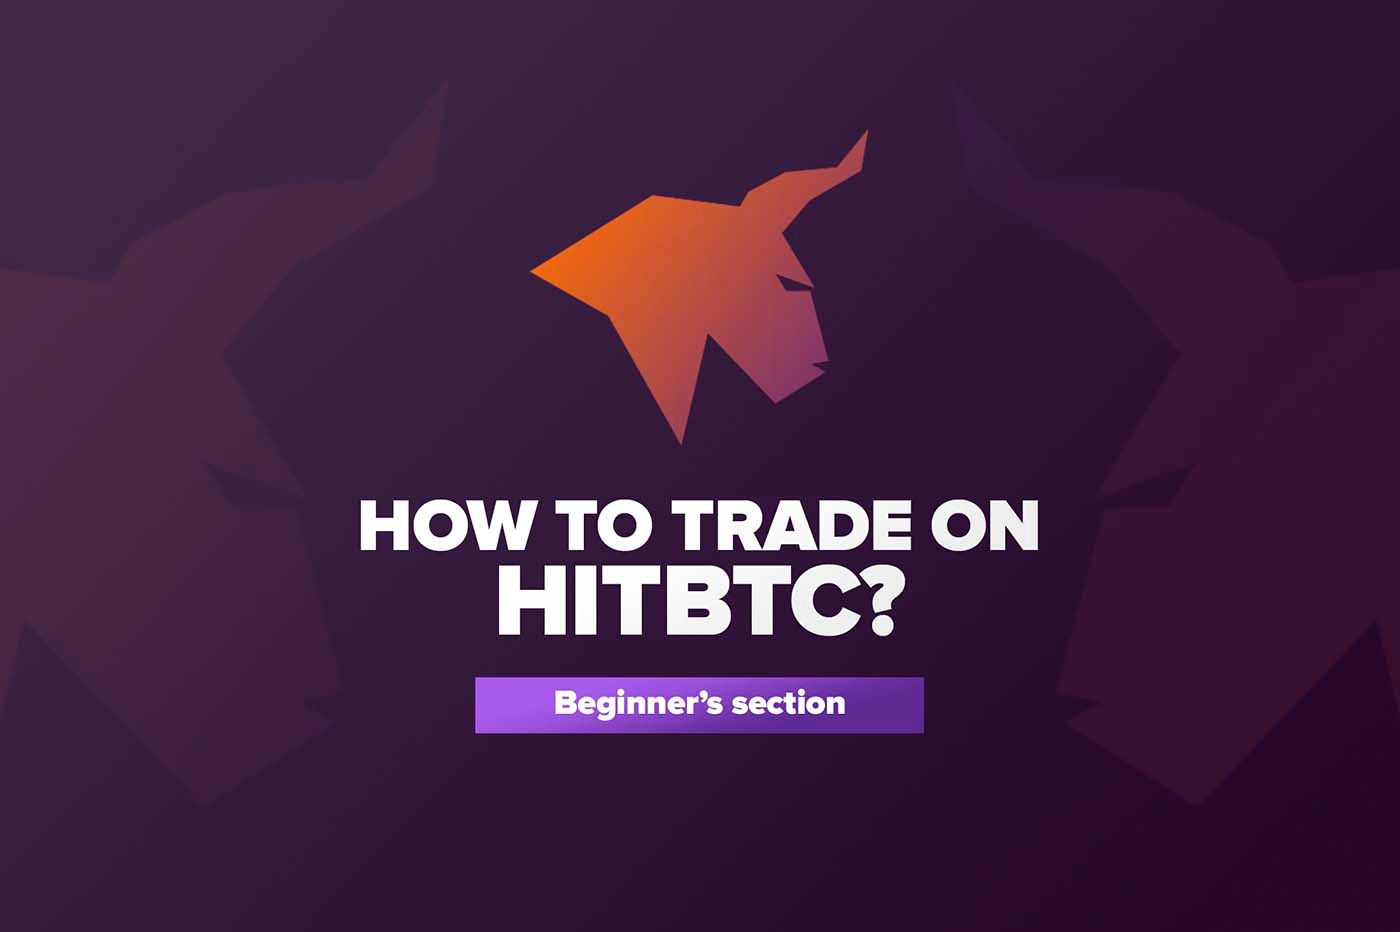 Article Как торговать на HITBTC?